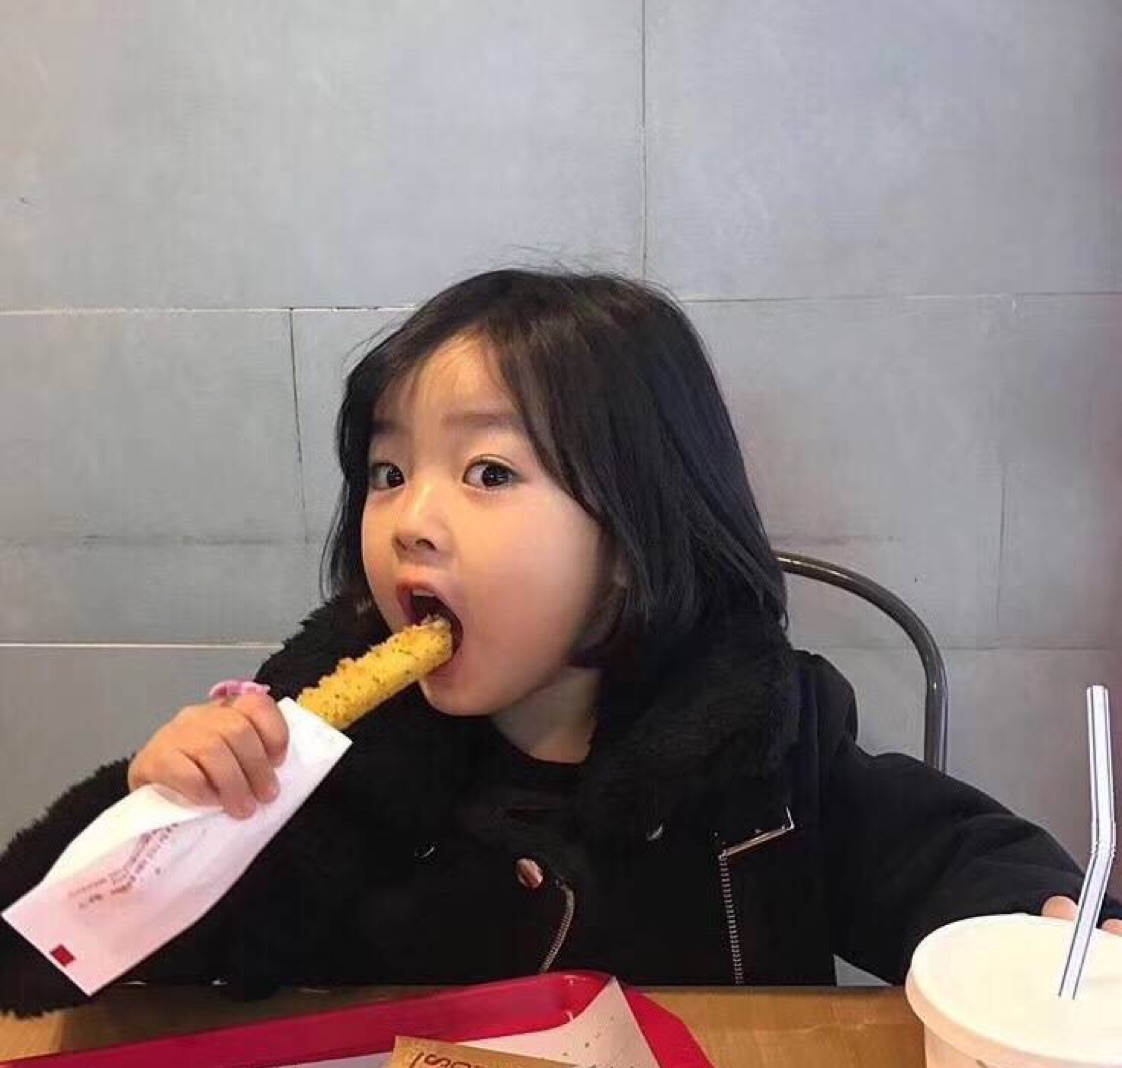 Korean baby girl